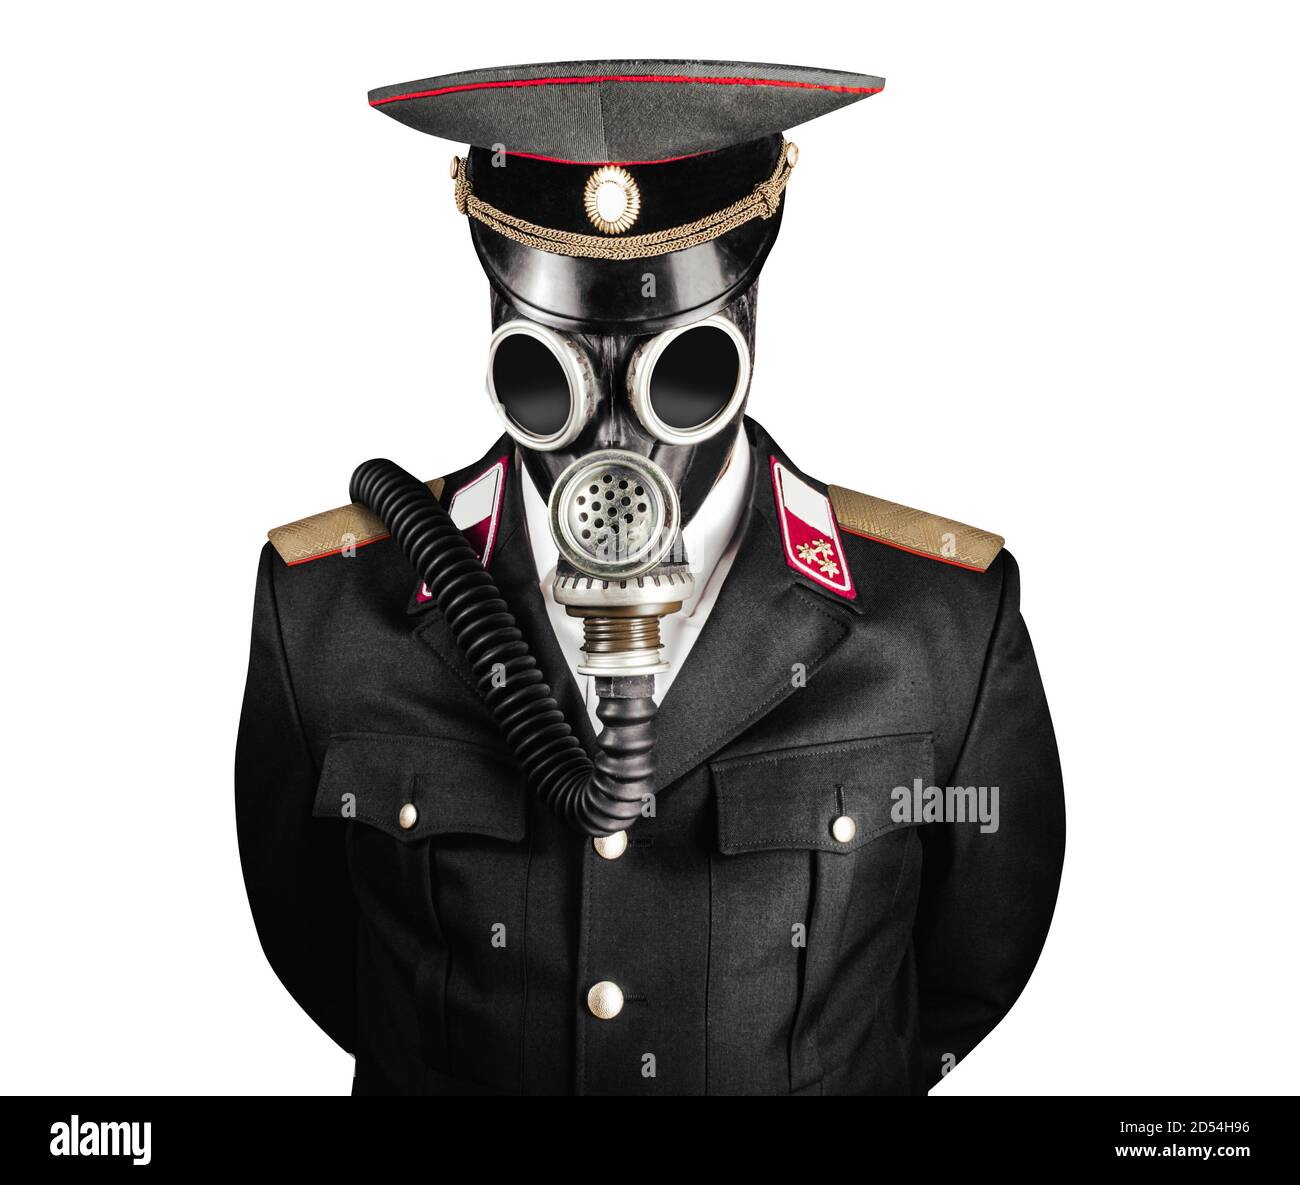 Foto isolata di un ufficiale militare post-apocalittico in tuta uniforme e copertura con cappuccio in piedi nella maschera a gas sovietica su sfondo bianco. Foto Stock